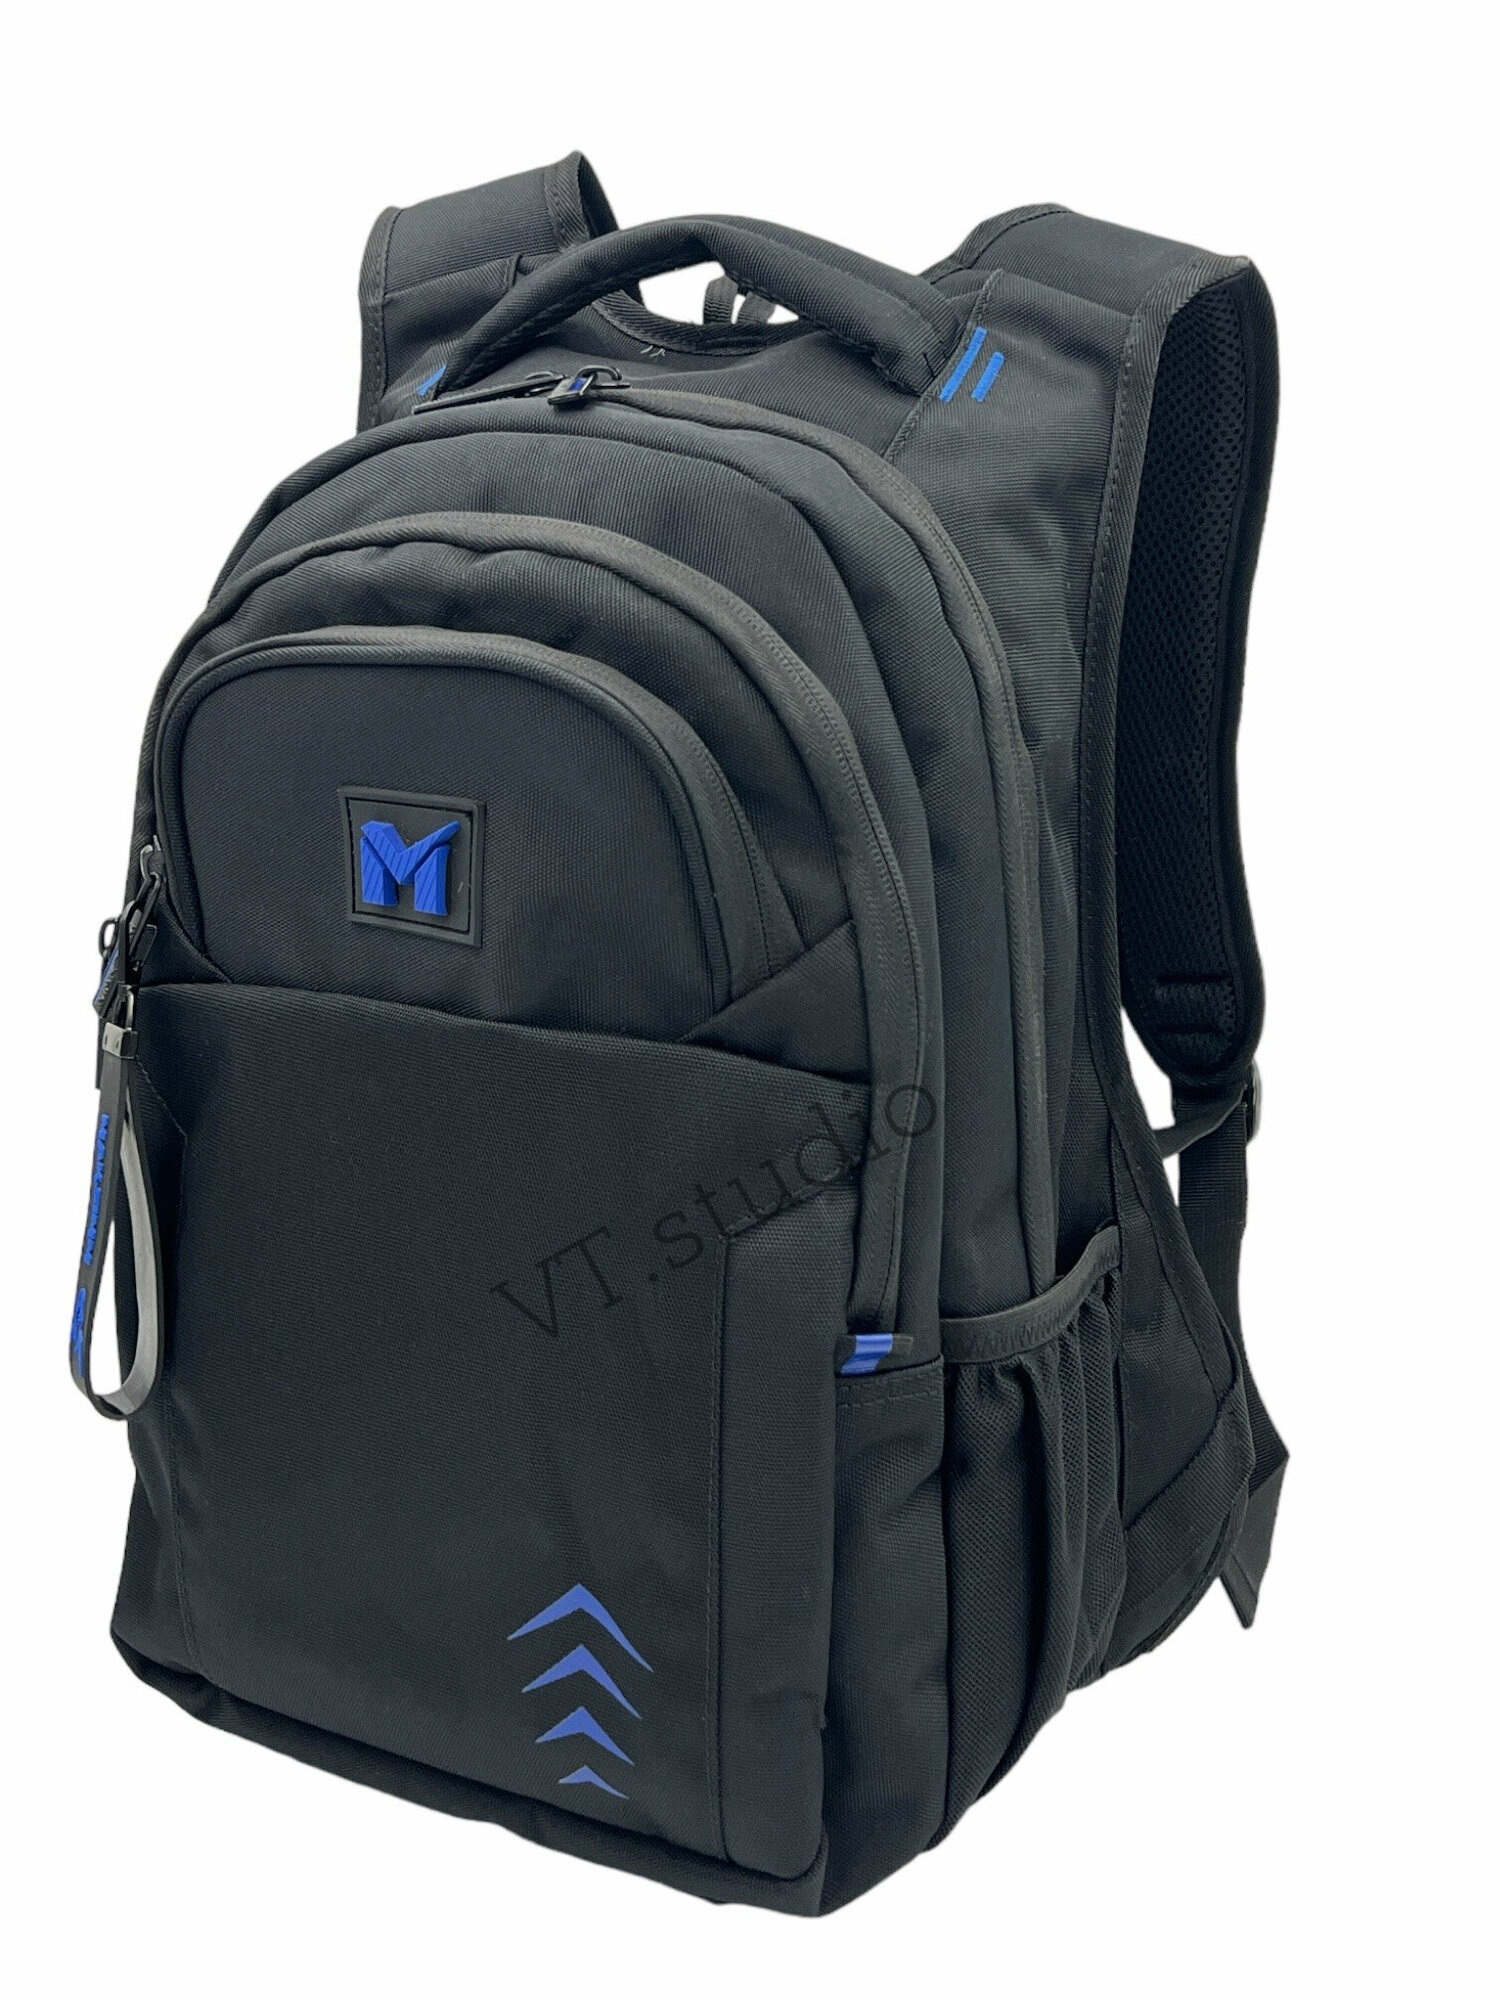 Рюкзак школьный MAKSIMM E083 для мальчика (подростков) черно-синий с анатомической спинкой